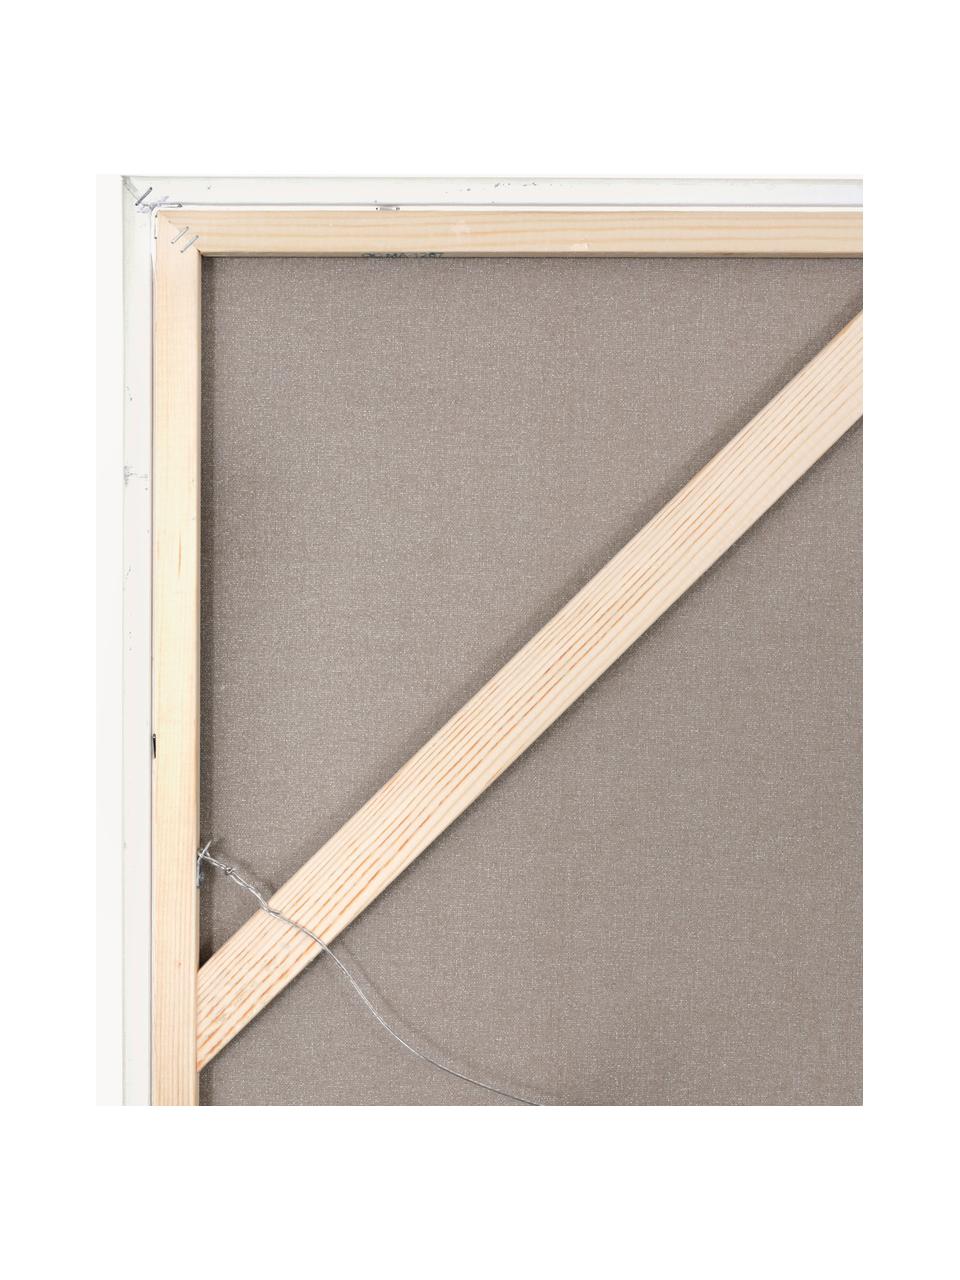 Handgemaltes Leinwandbild Playblack mit Holzrahmen, Rahmen: Eichenholz, beschichtet, Design 1, B 102 x H 102 cm